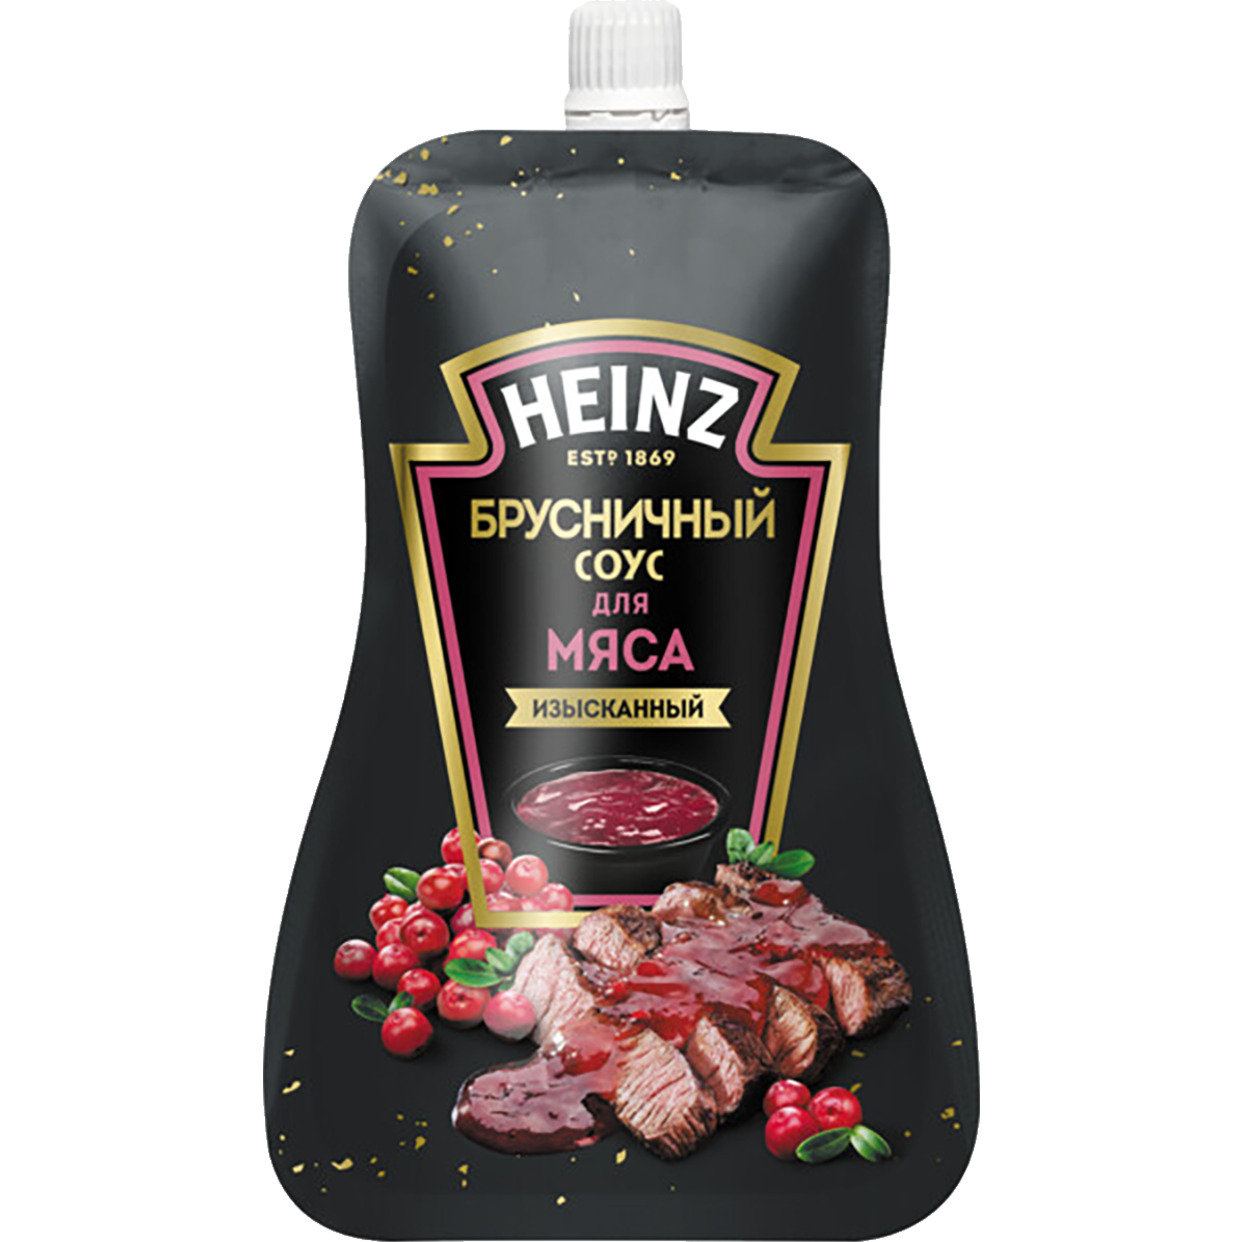 HEINZ Соус Брусничный для мяса деликатесный 200г по акции в Пятерочке